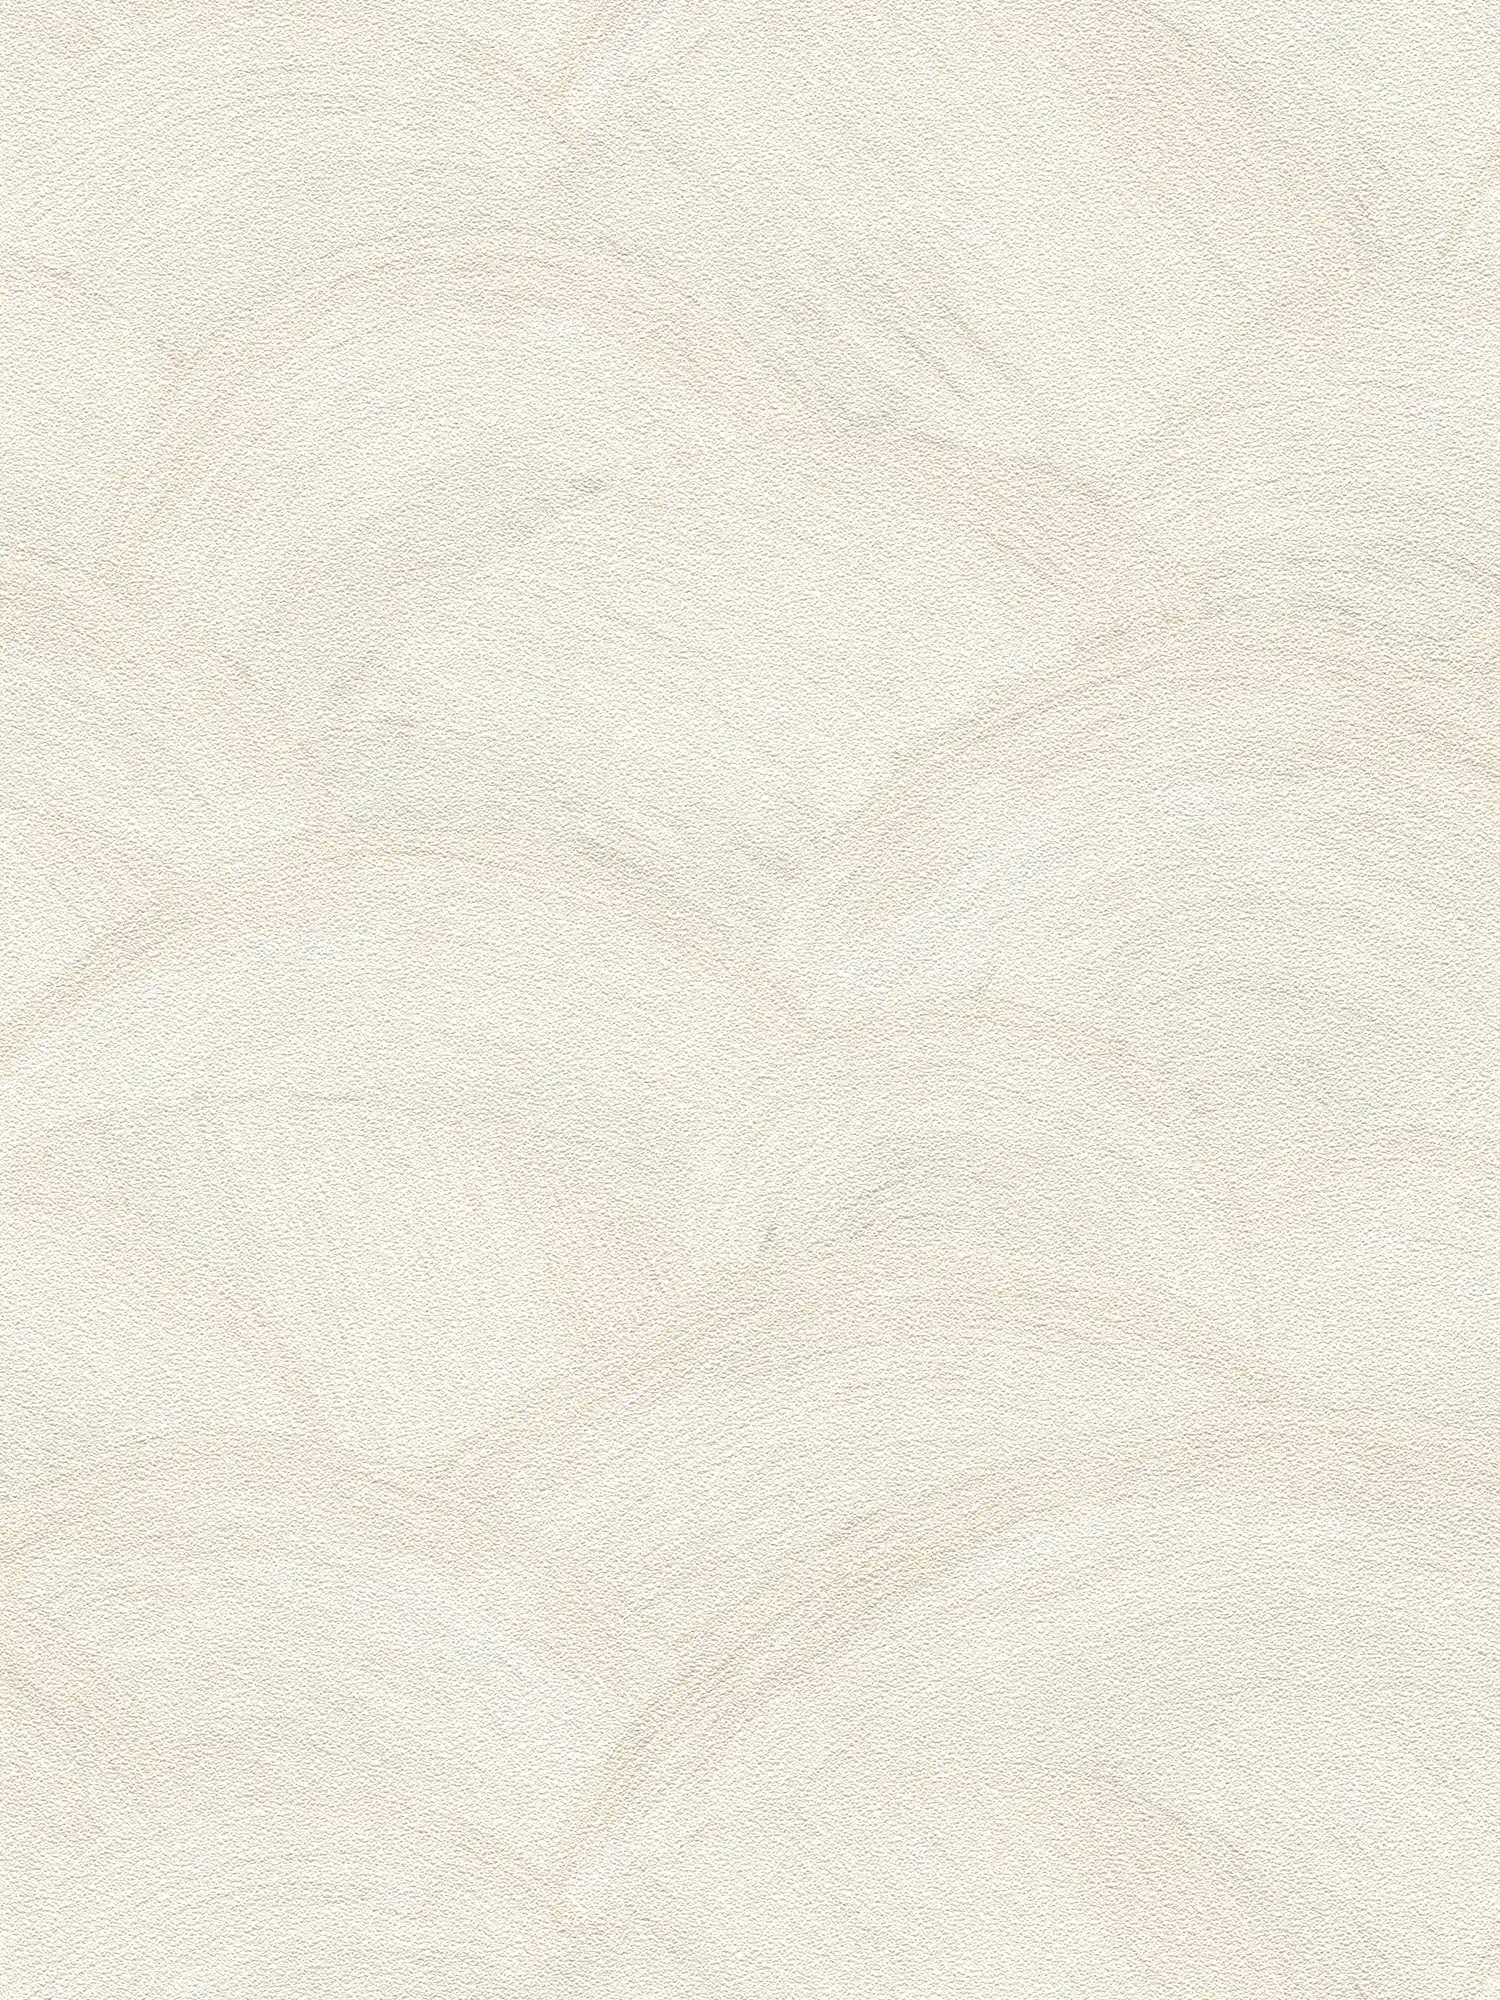 Vliesbehang met subtiel golfpatroon - wit, crème, grijs
